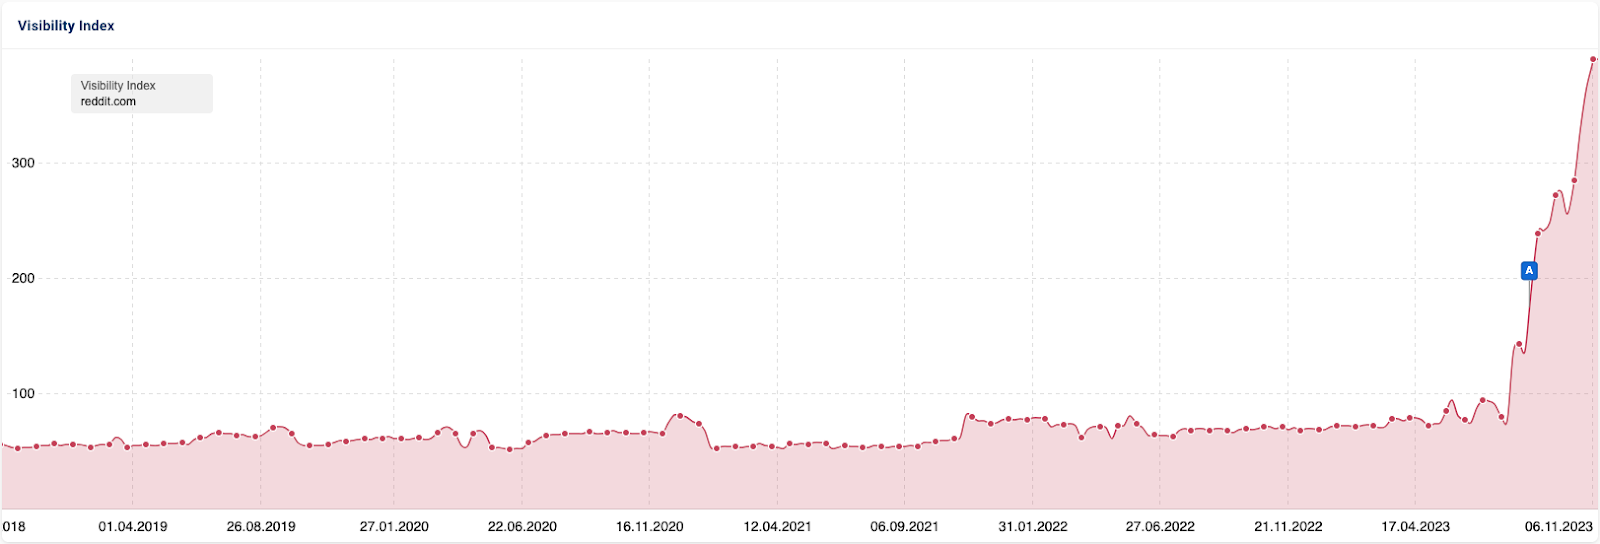 Screenshot aus der SISTRIX Toolbox, der Sichtbarkeitsverlauf von reddit.com über die letzten 5 Jahre ist zu sehen. Von Ende 2018 bis Mitte 2023 ist die Linie sehr konstant aber langsam von etwa 50 auf ungefähr 80 Punkte gestiegen. Anfang August steigt die Kurve deutlich stärker an. Aus den etwa 80 Sichtbarkeitspunkten sind Ende November circa 430 geworden, also etwa verfünffacht.